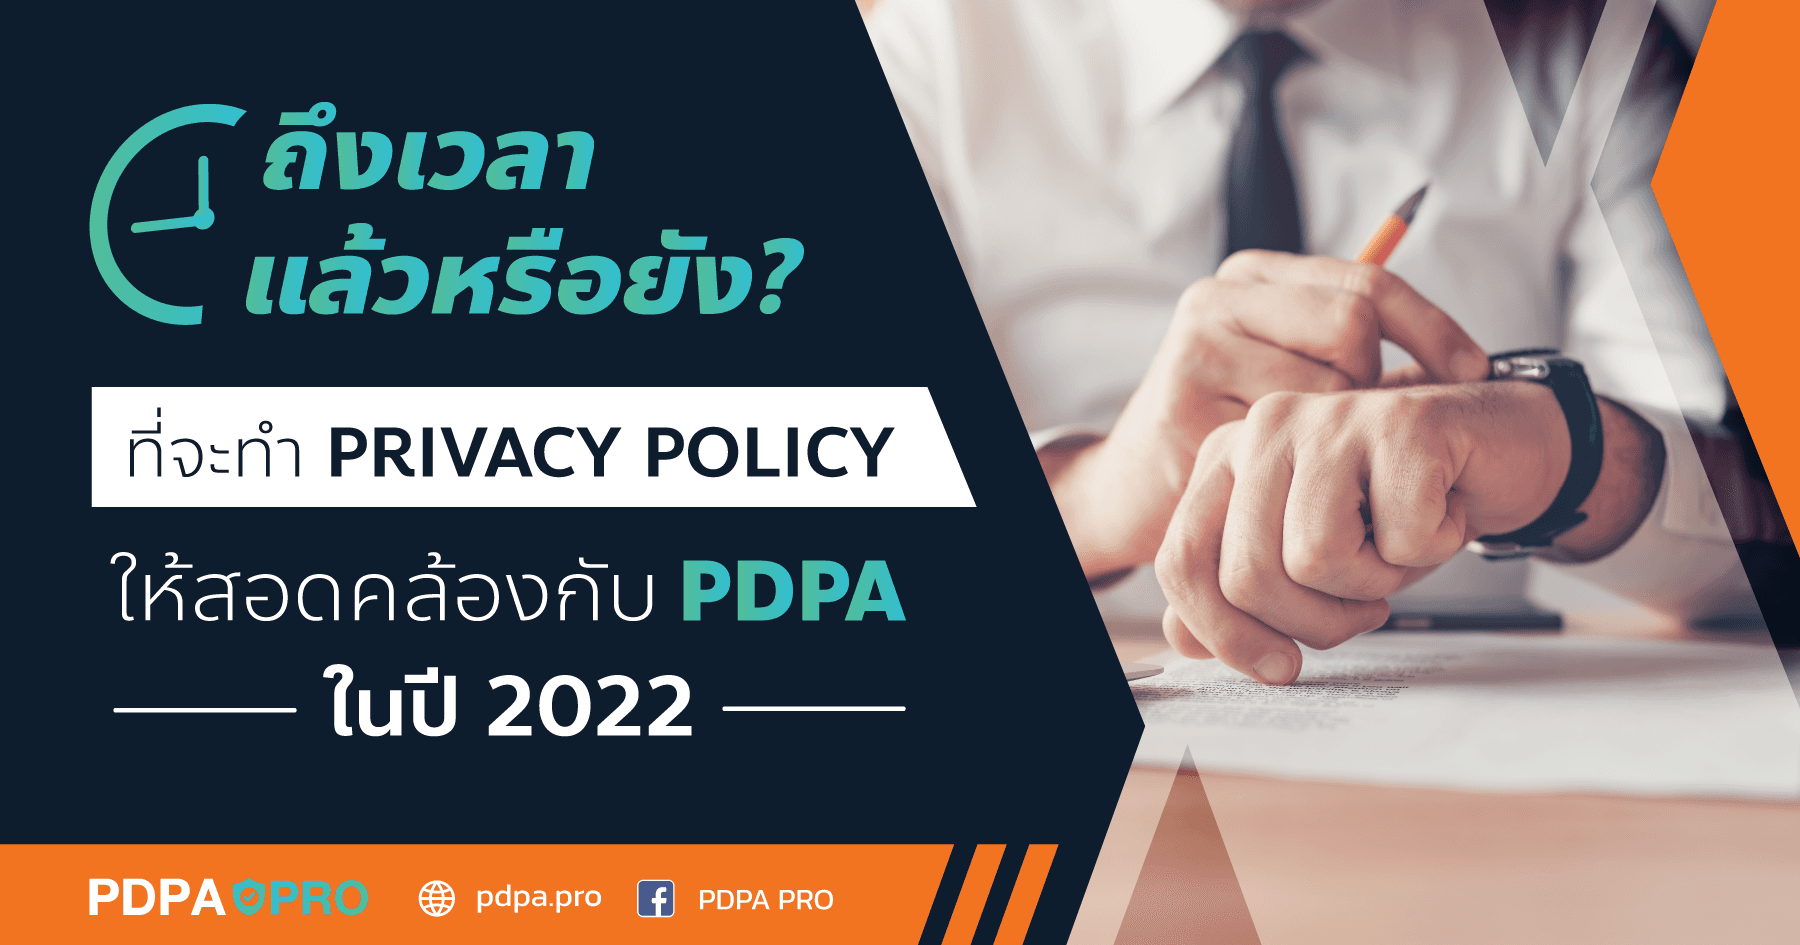 ถึงเวลาแล้วหรือยัง? ที่จะทำ Privacy Policy ให้สอดคล้องกับ PDPA ในปี 2022